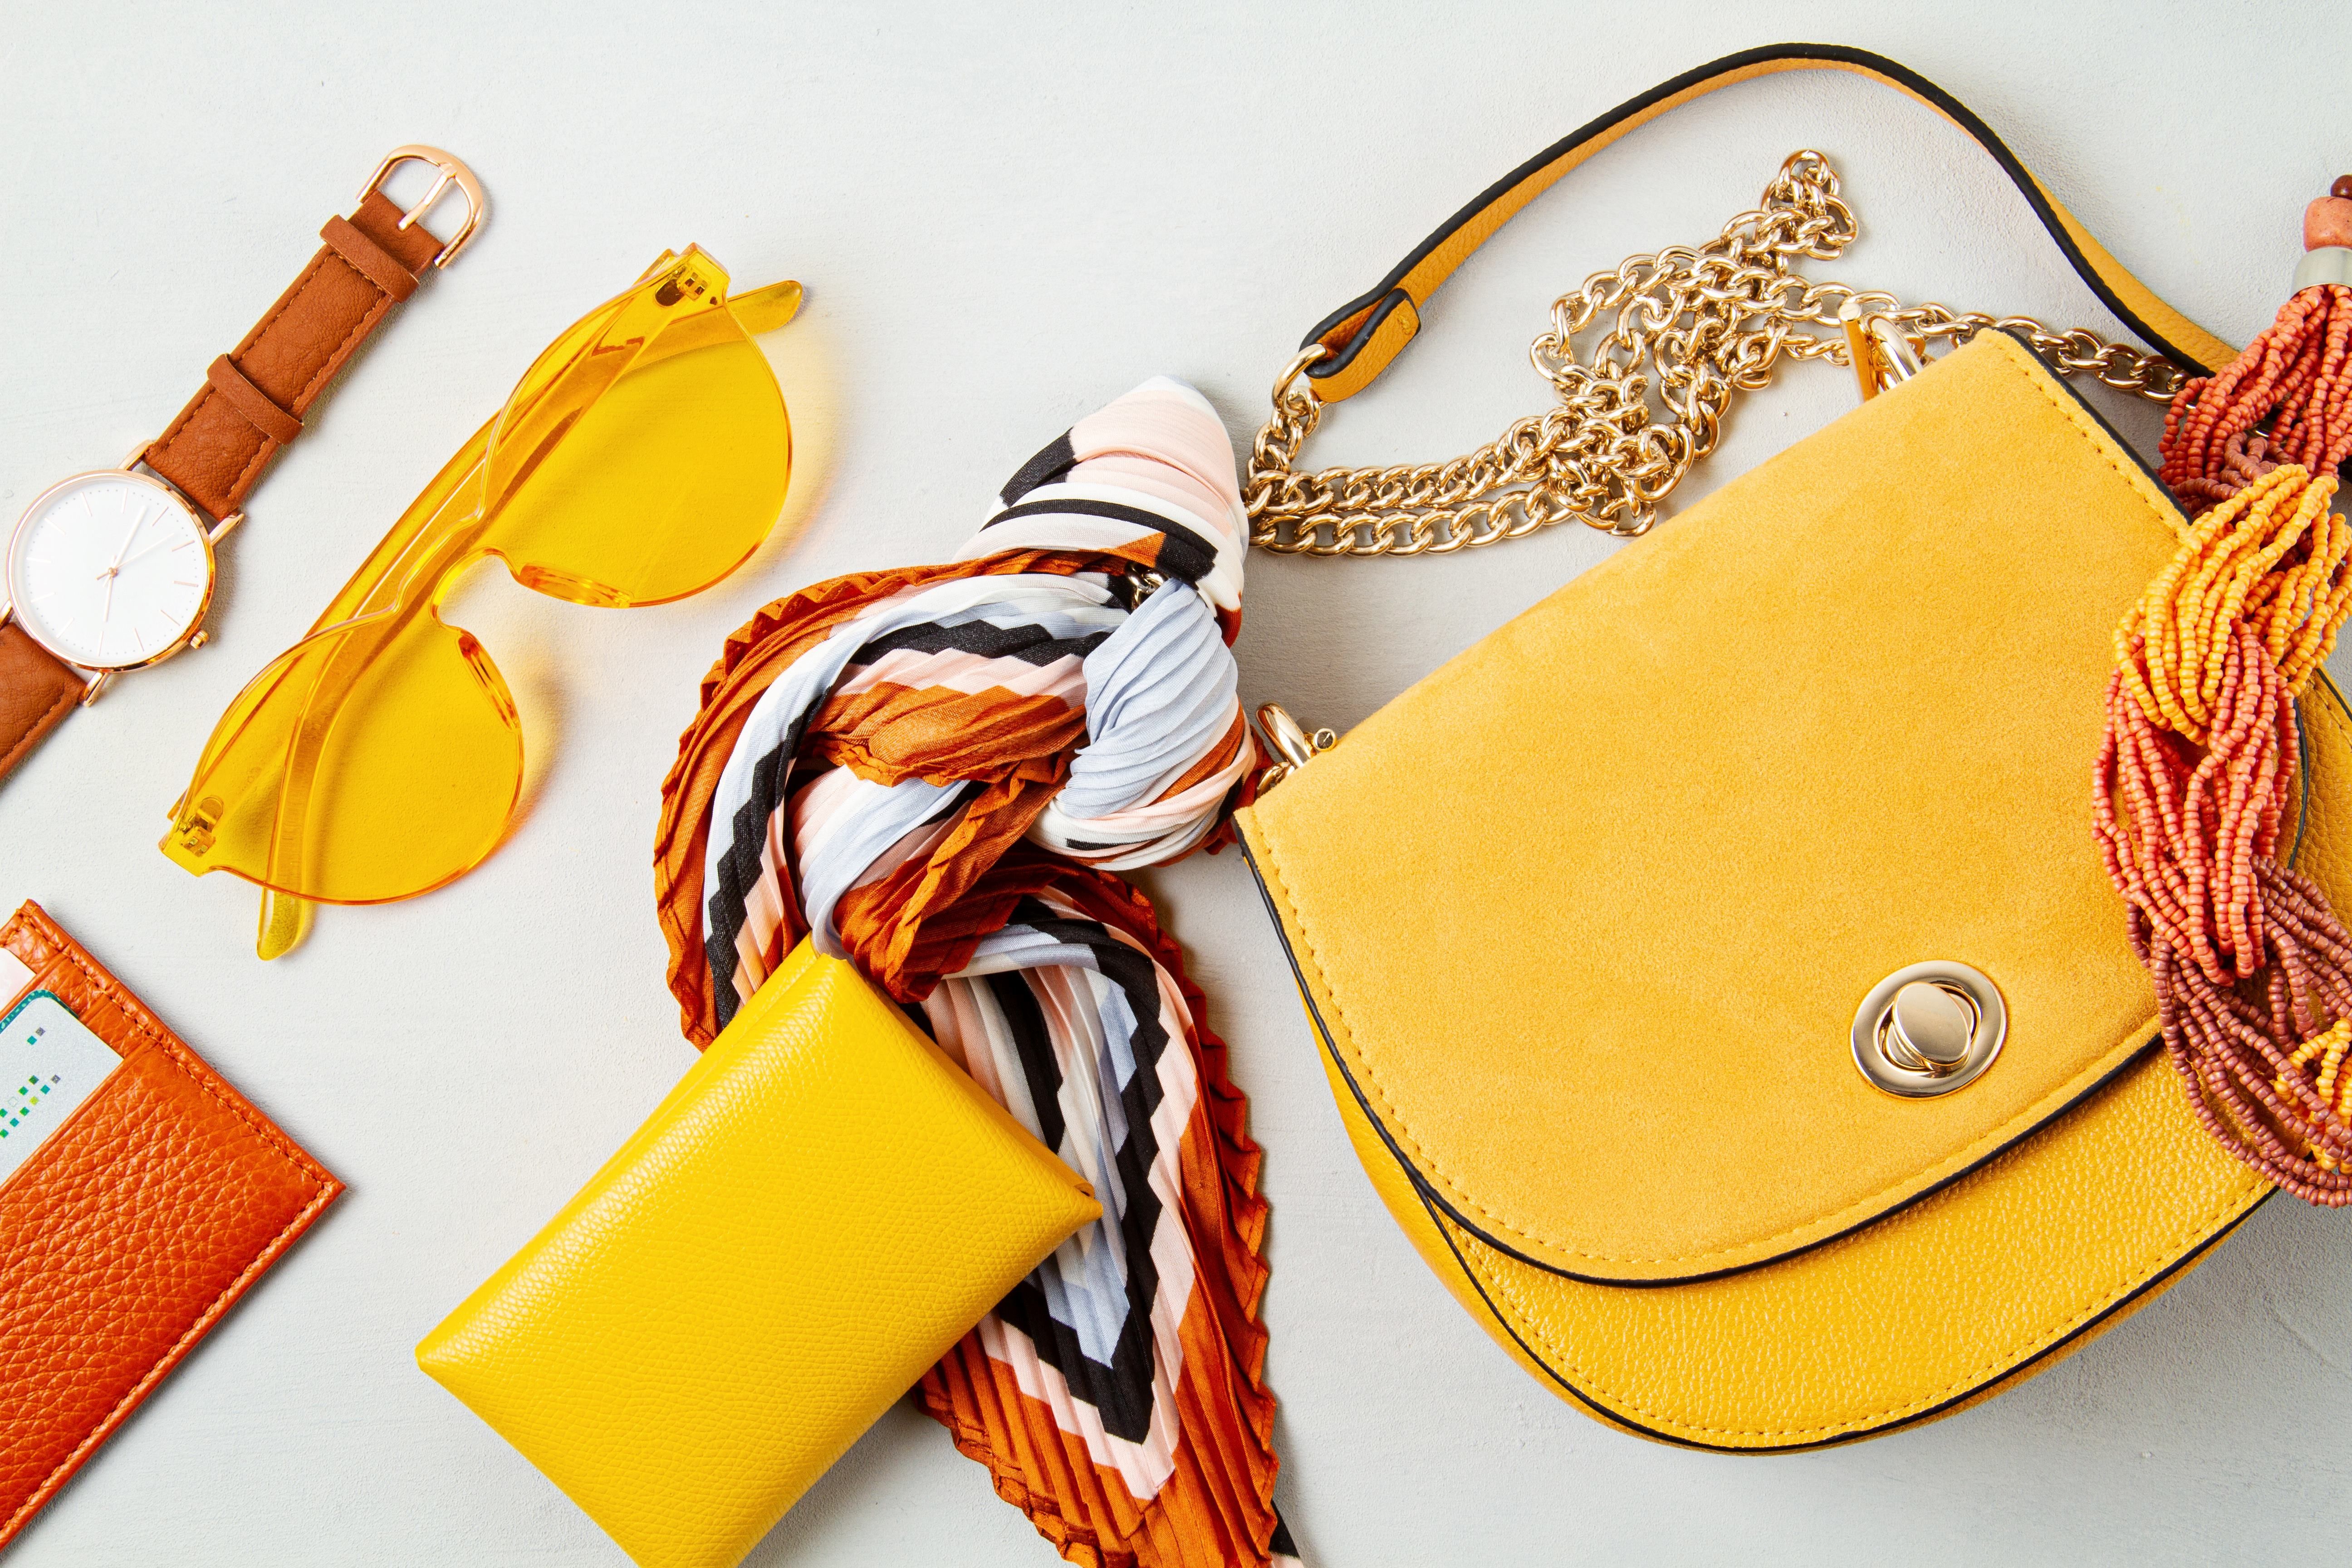 Un rivenditore online svedese specializzato in beni di lusso sta cercando fornitori di borse, borsette, occhiali da sole, gioielli, cinture, fermagli per capelli e prodotti simili. ID EEN BRSE20240613015